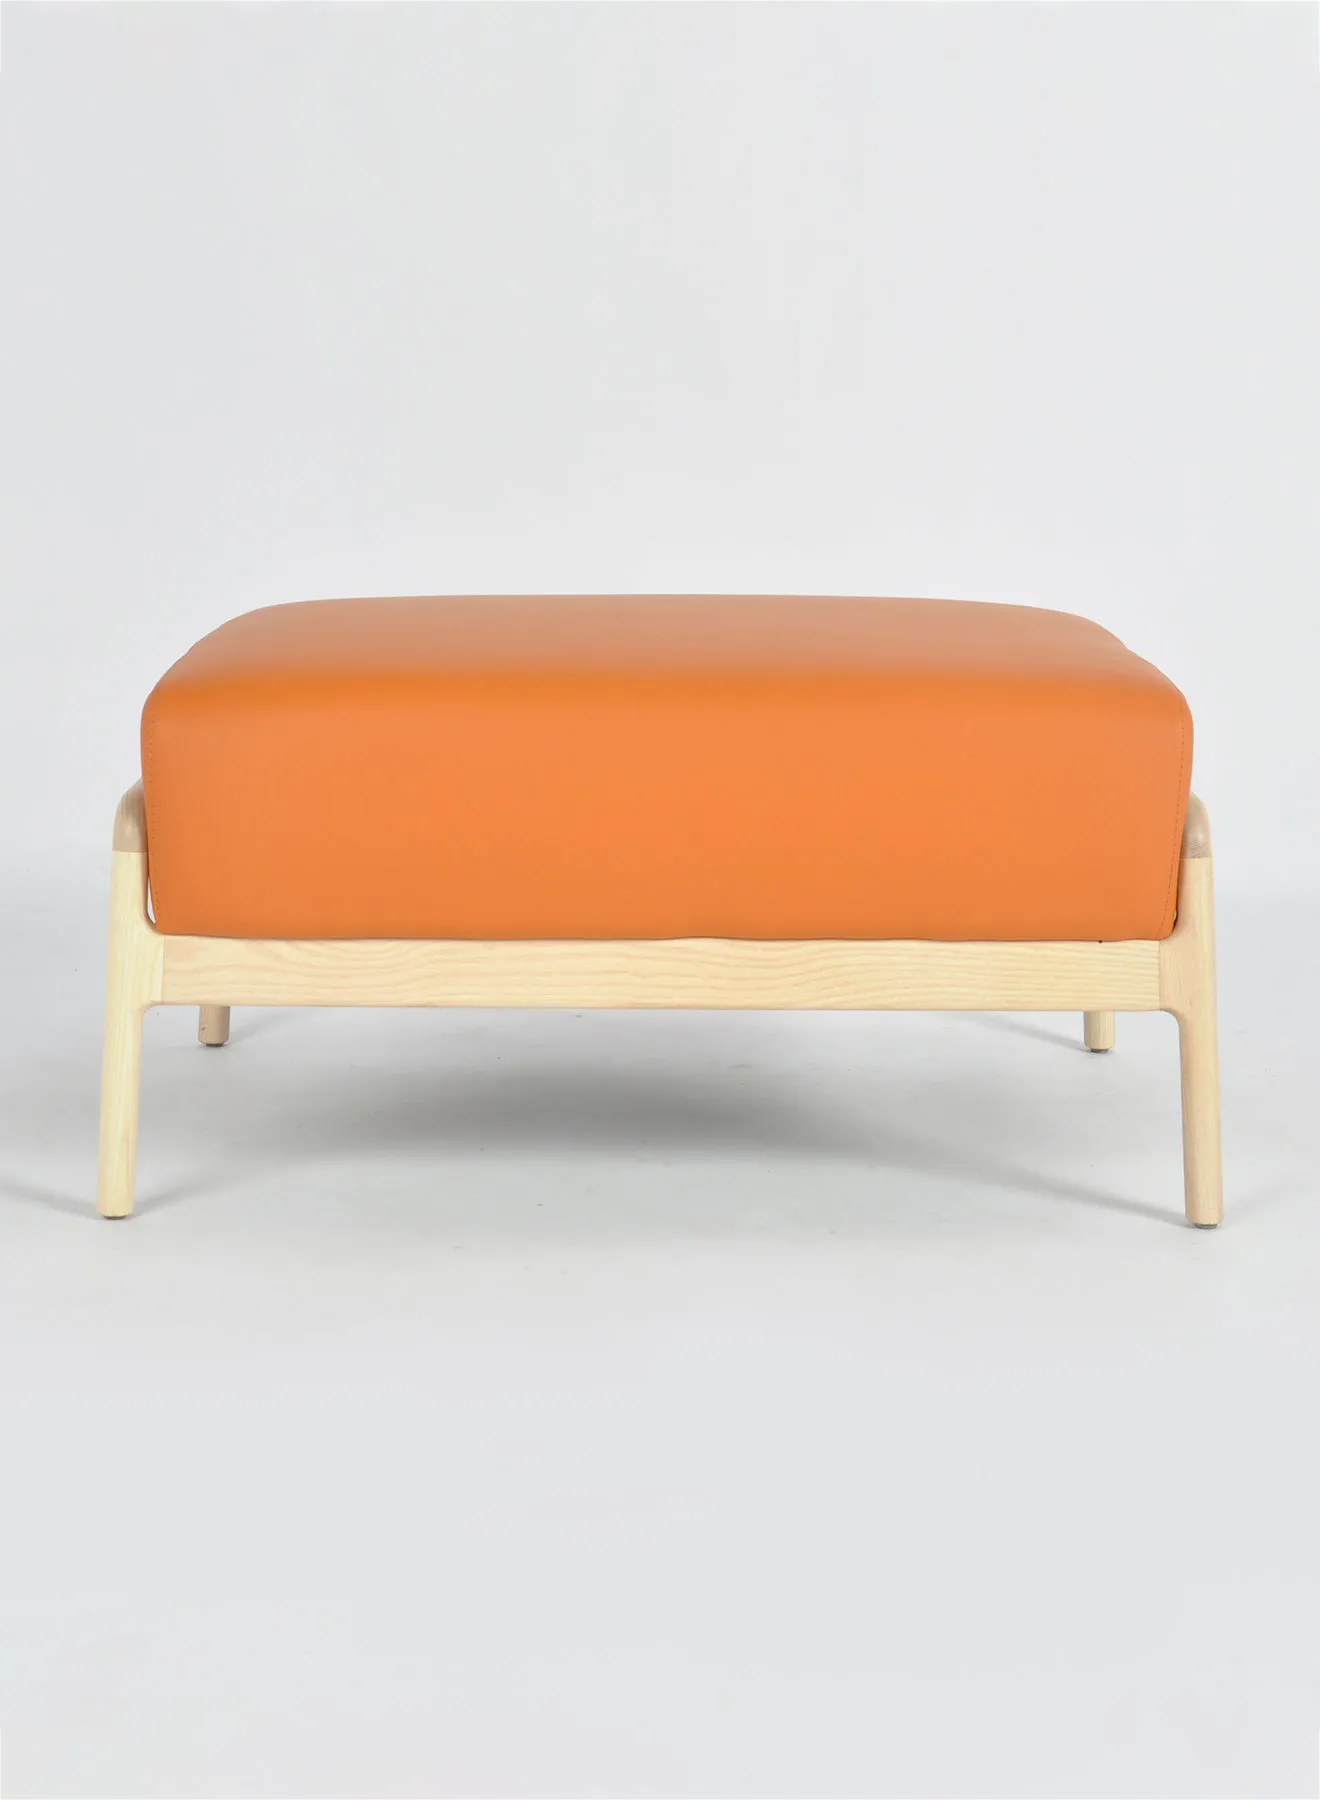 التبديل الحديث التصميم المثالي أريكة لوفيلا البراز الحرف مع مواد فريدة وعالية الجودة لغرفة المعيشة برتقالي 88X62X43cm